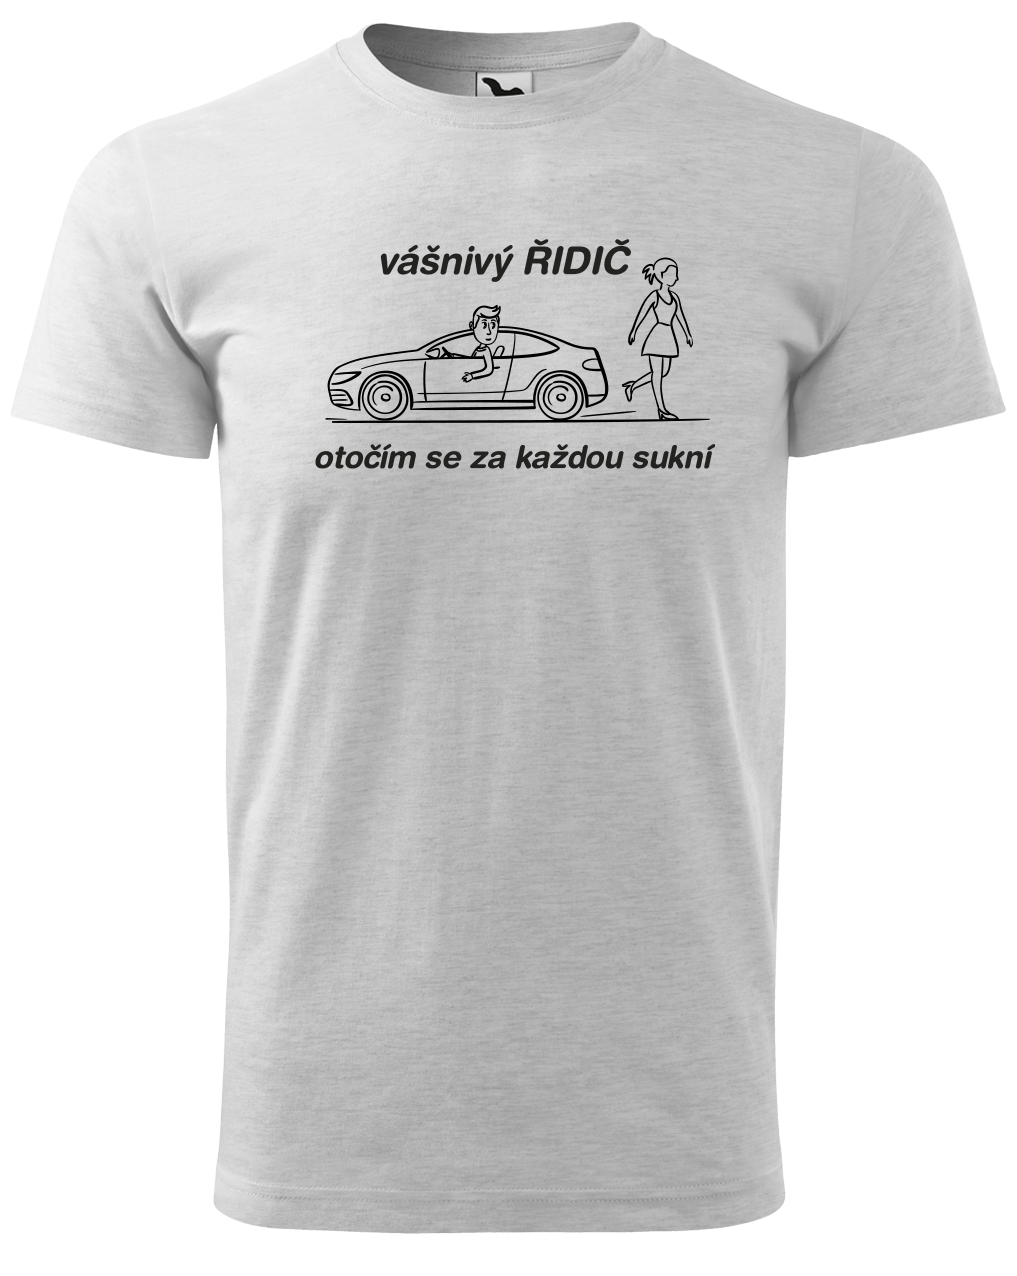 Vtipné tričko pro řidiče - Vášnivý řidič Velikost: L, Barva: Světle šedý melír (03)